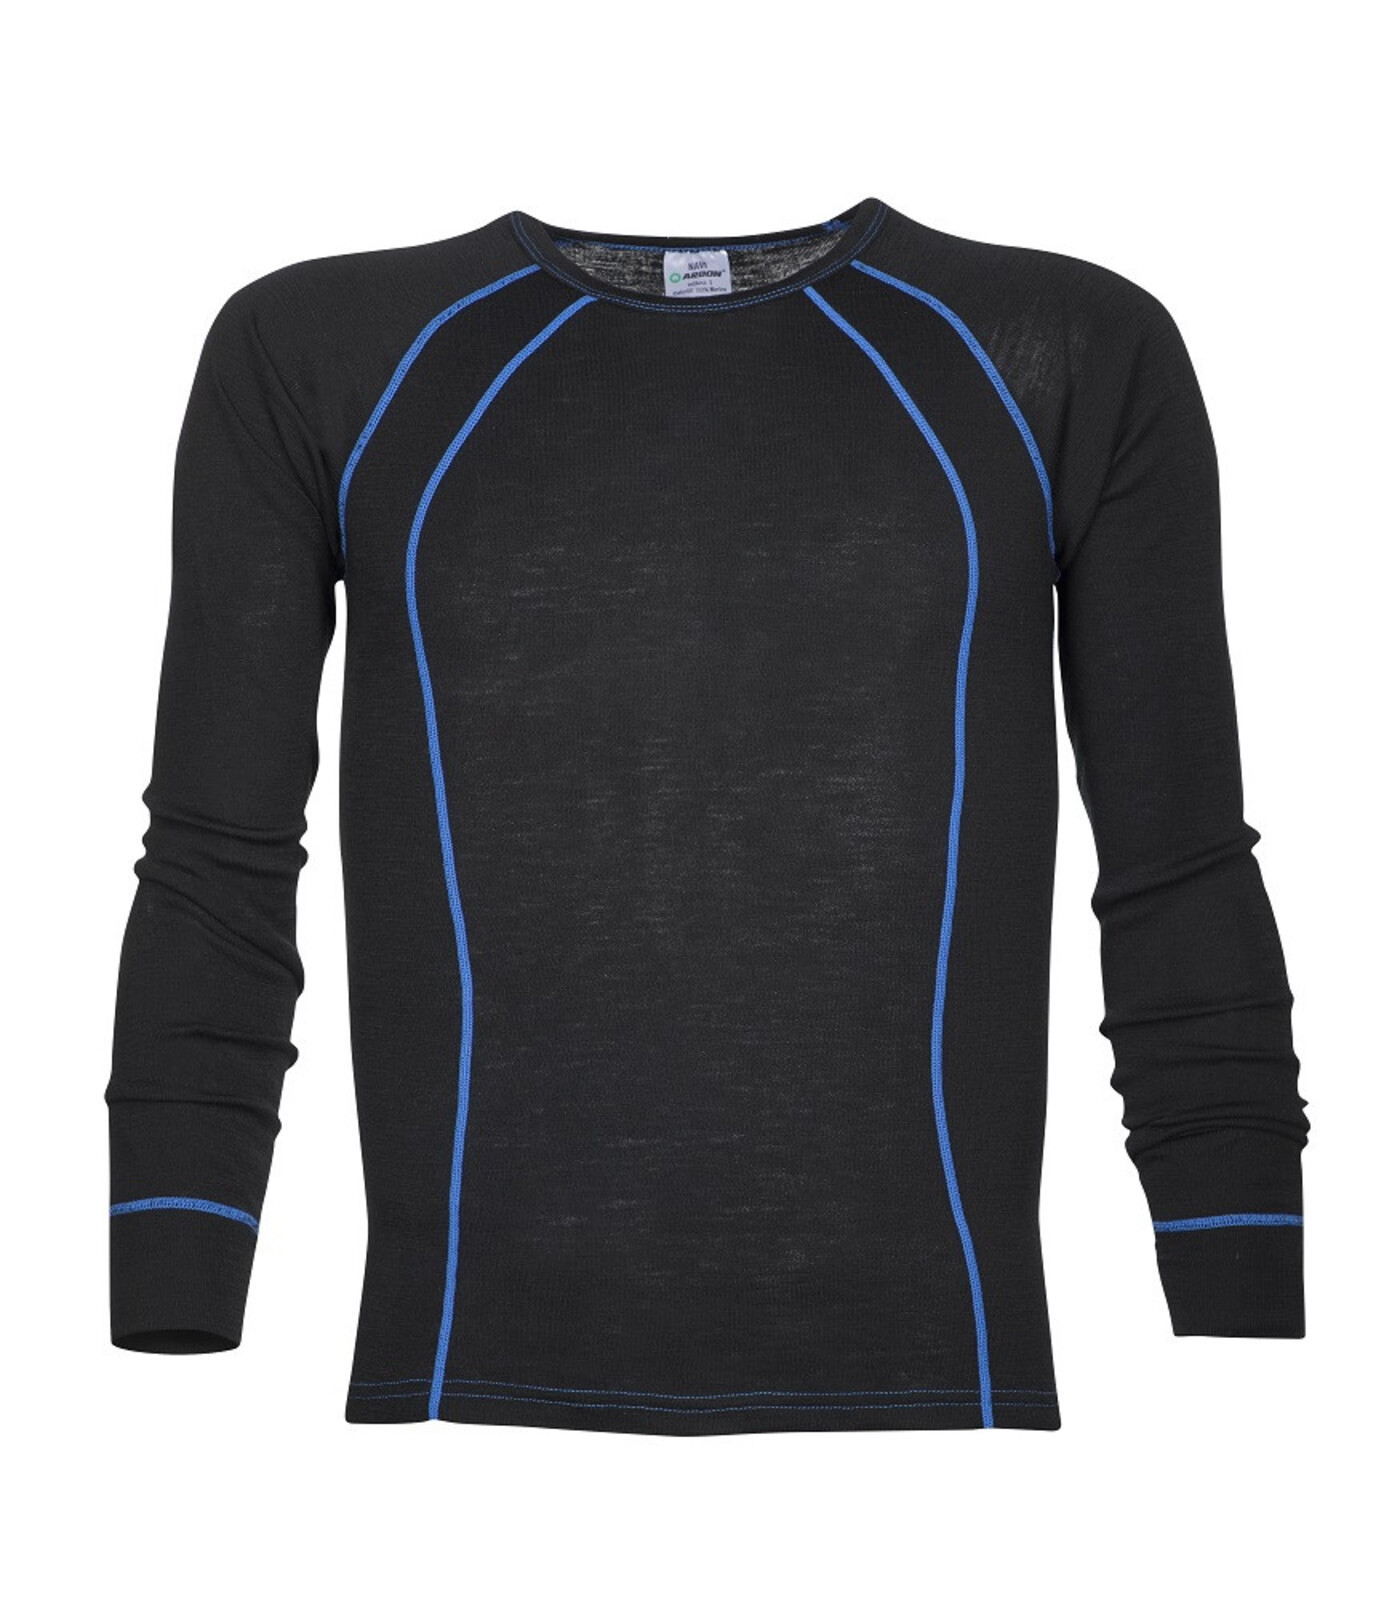 Pánske funkčné merino tričko s dlhým rukávom Ardon Navi - veľkosť: M, farba: čierna/modrá